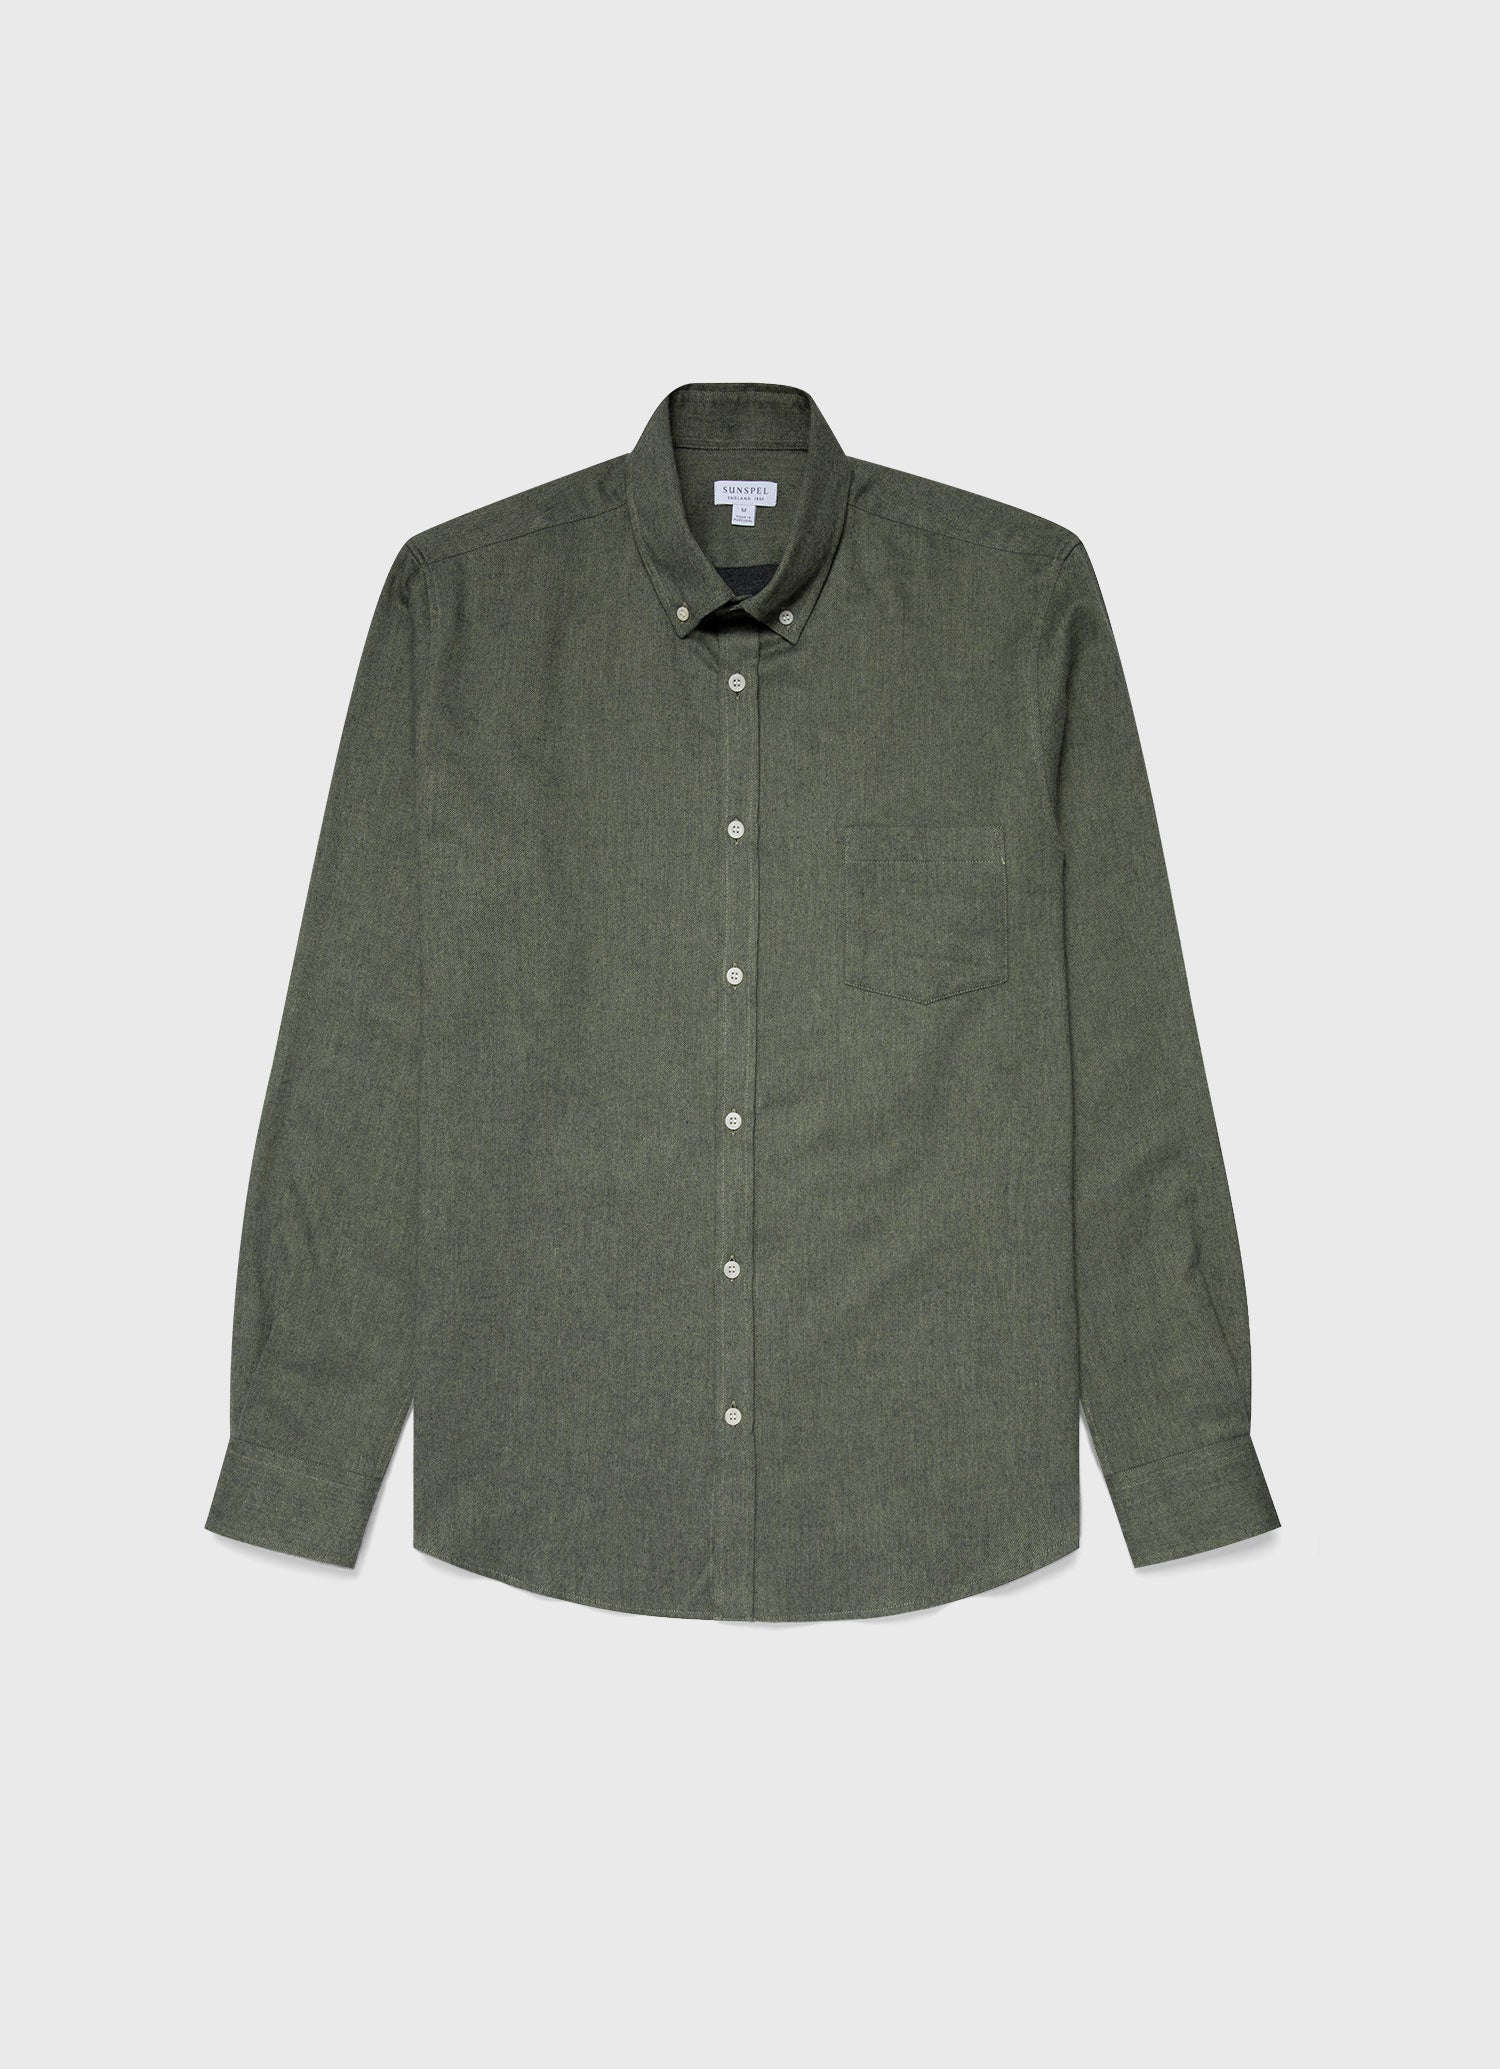 Men's Button Down Flannel Shirt in Green Melange